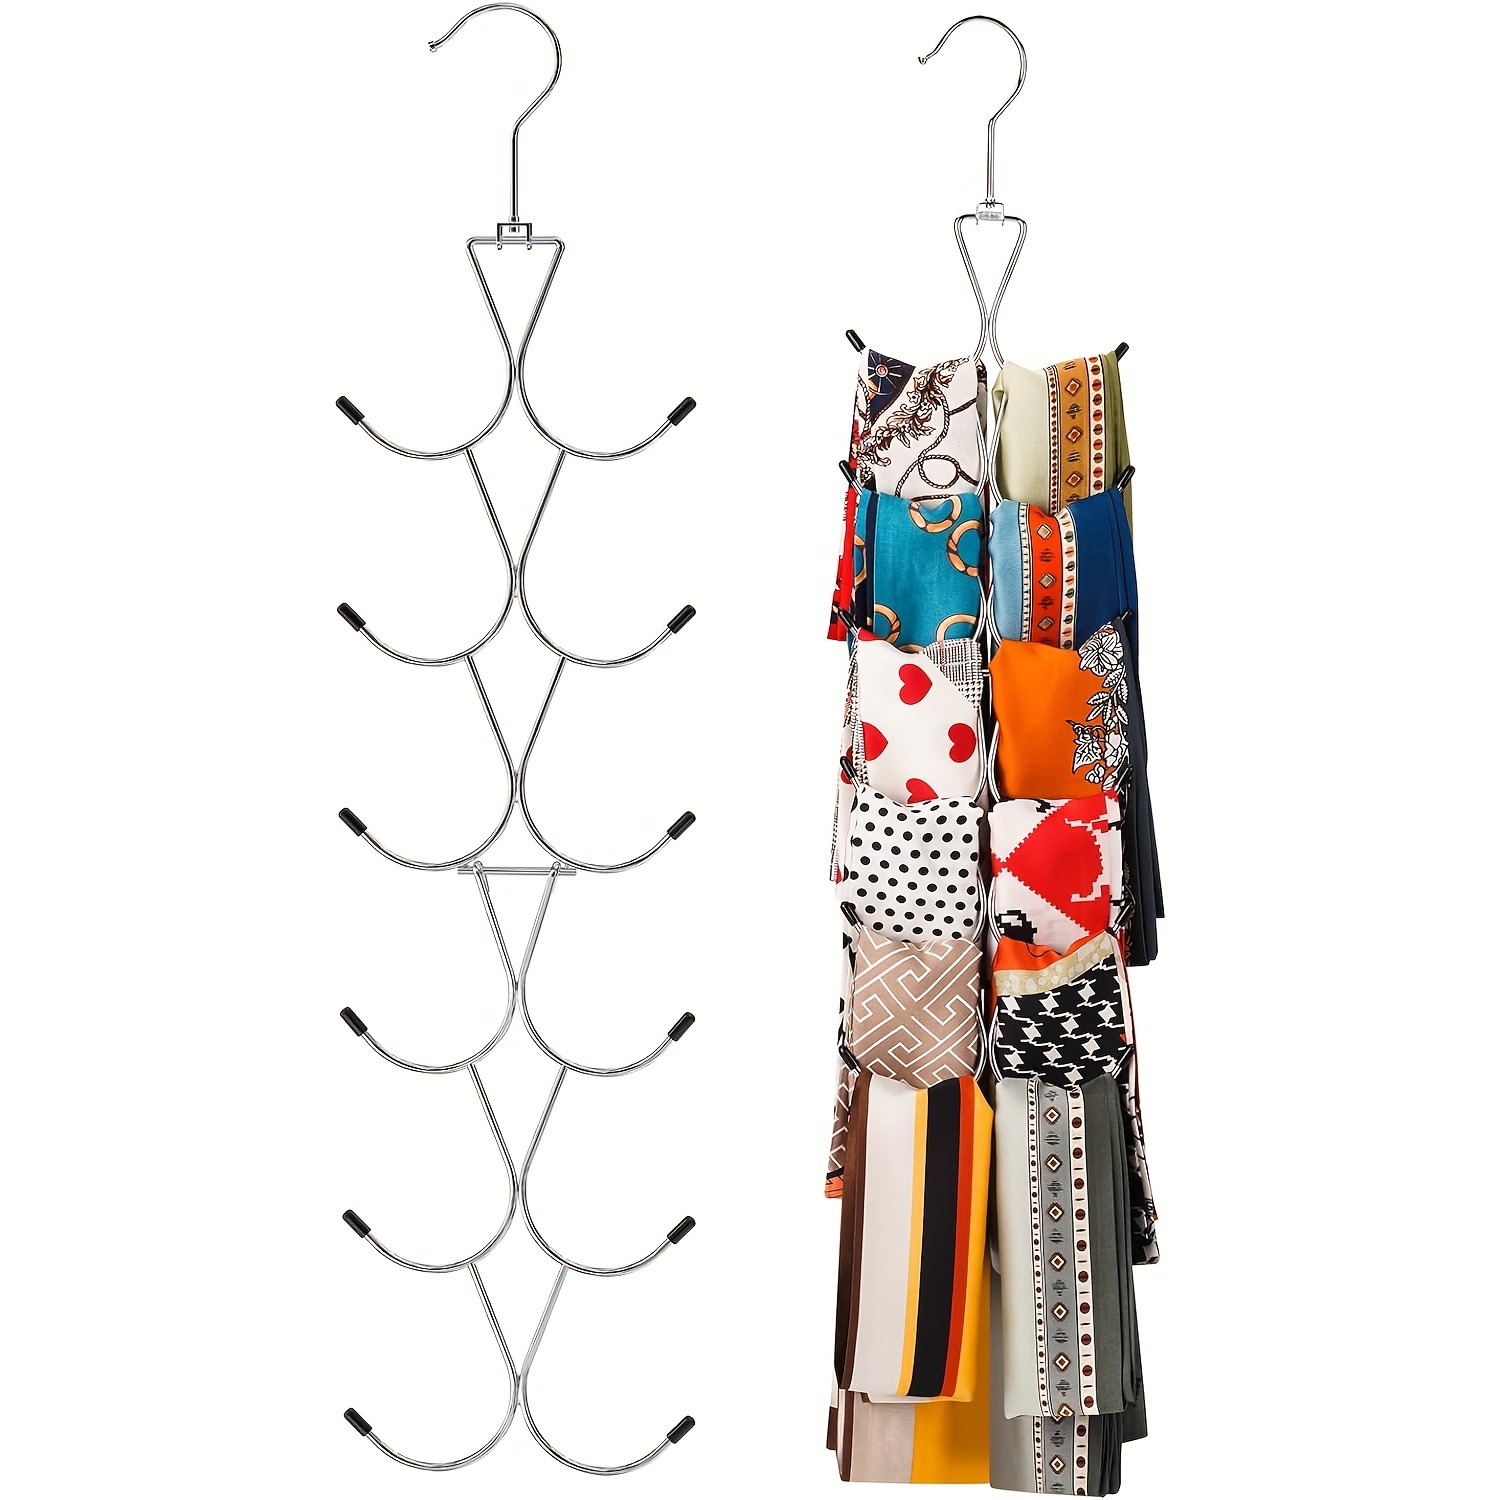 

1pc Multi-hook Non-slip Ties Hanger, 360 Degree Swivel Belts Rack For Ties, Scarves, Household Space Saving Organizer For Closet, Wardrobe, Home, Dorm, Gift For Man, Boyfriend Gift